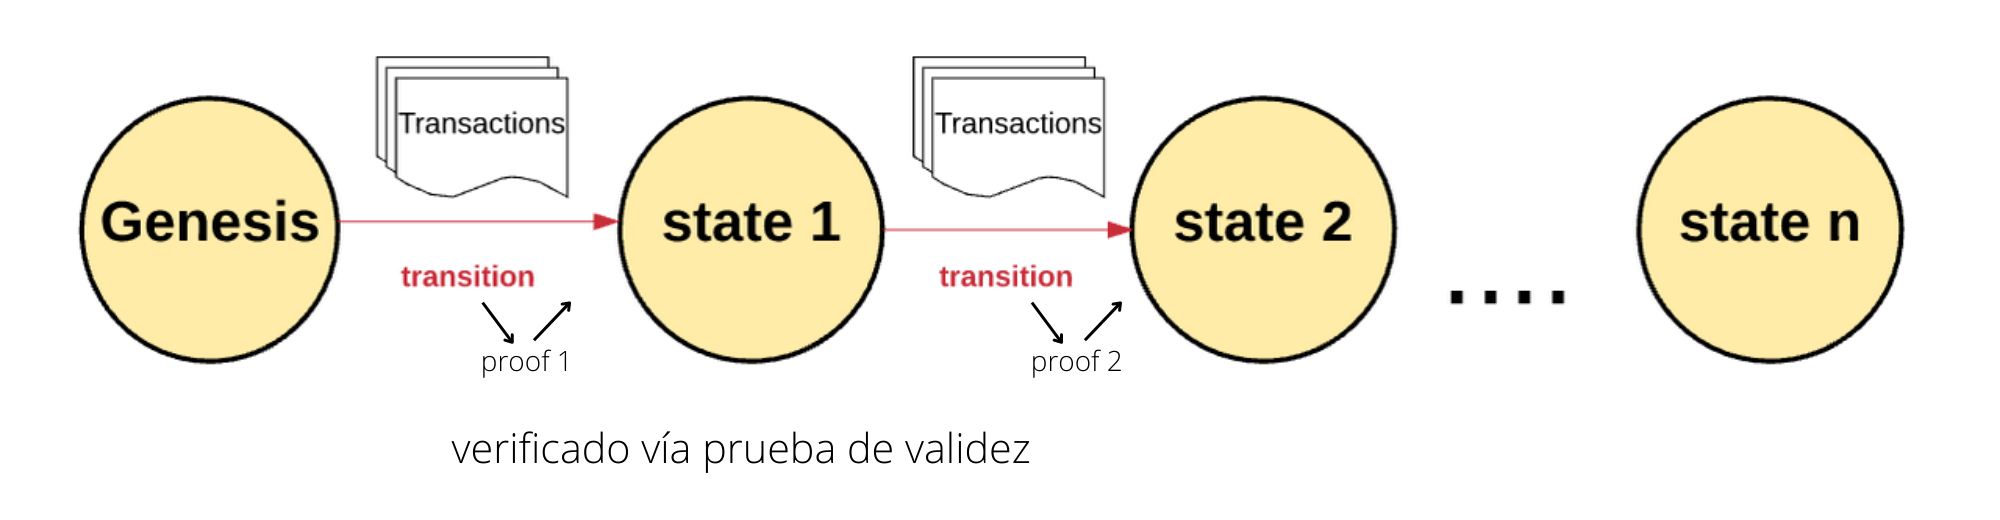 Una zkVM es aquella que la red Ethereum puede comprobar la validez de una blockchain-L2 entera en su paso del estado n al n+1 con una prueba de validez.